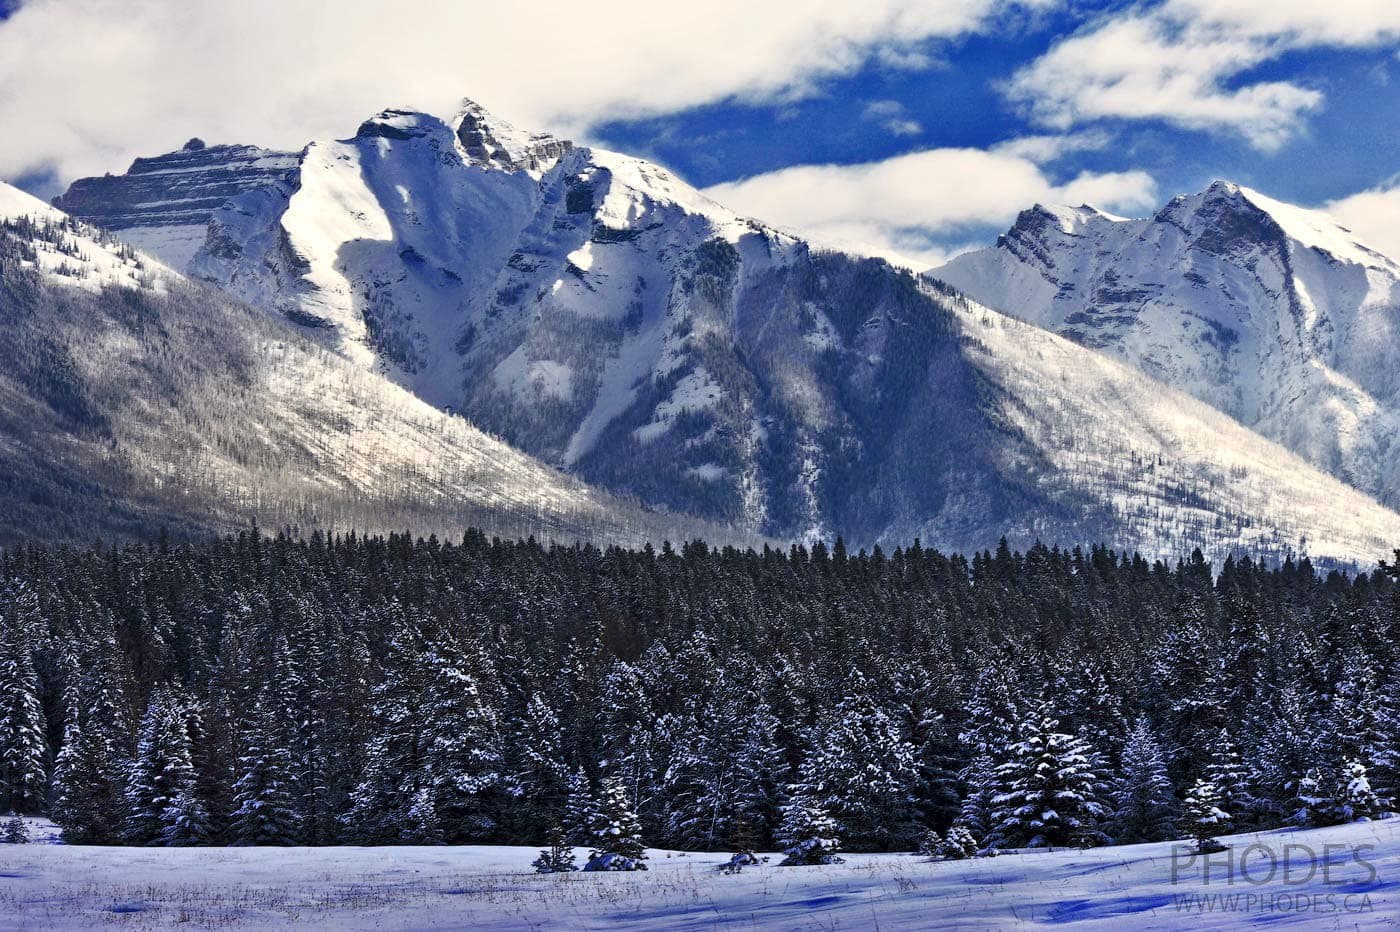 Mountains around Miniwanka lake in winter Banff